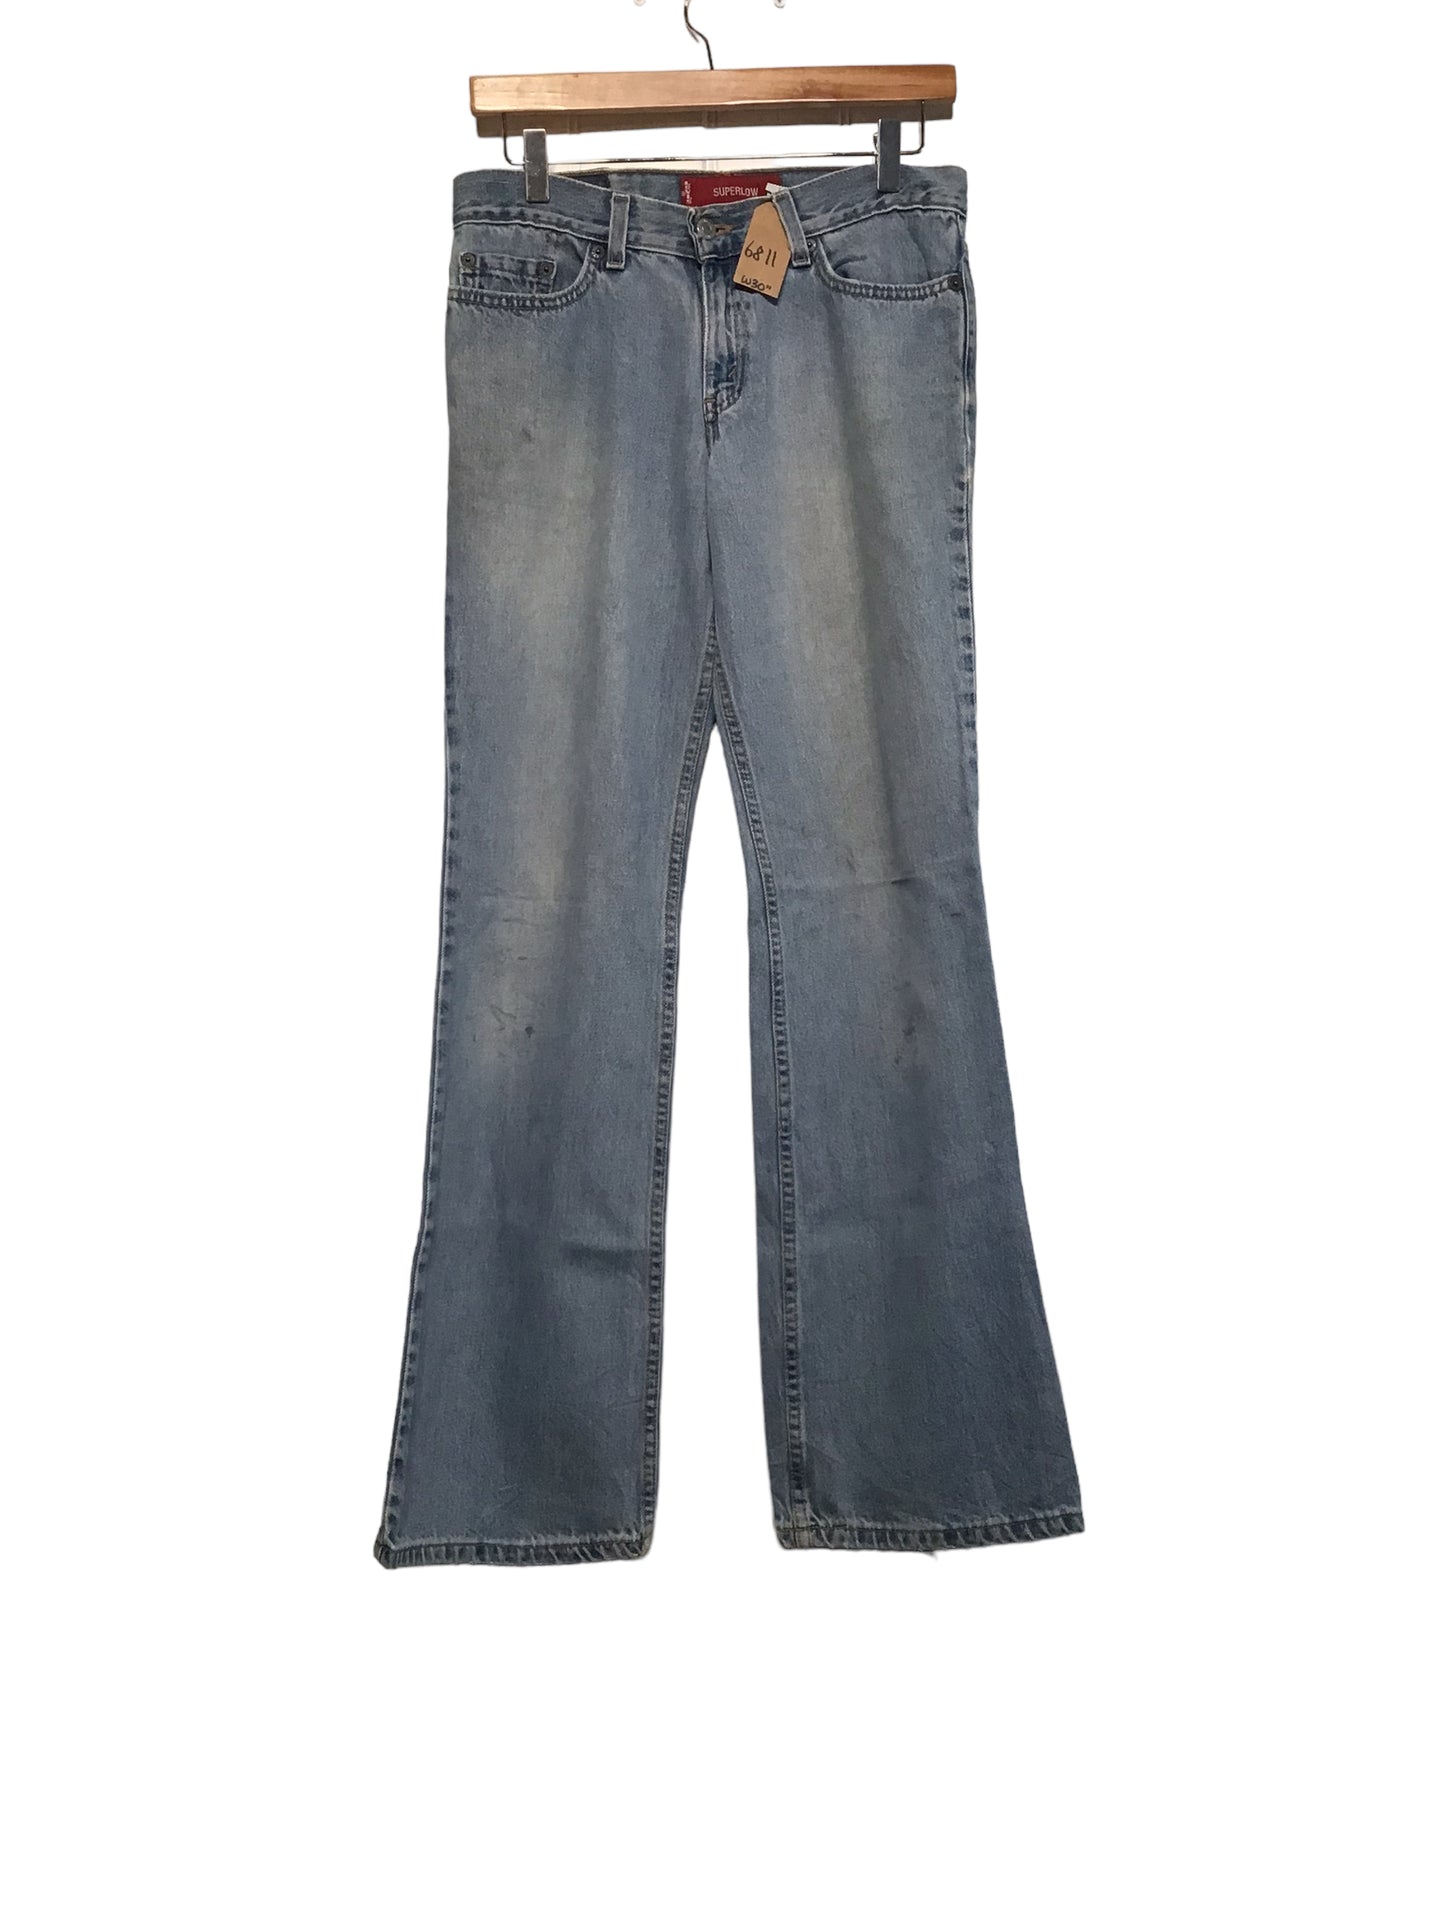 Levi’s 518 Jeans (30x32)